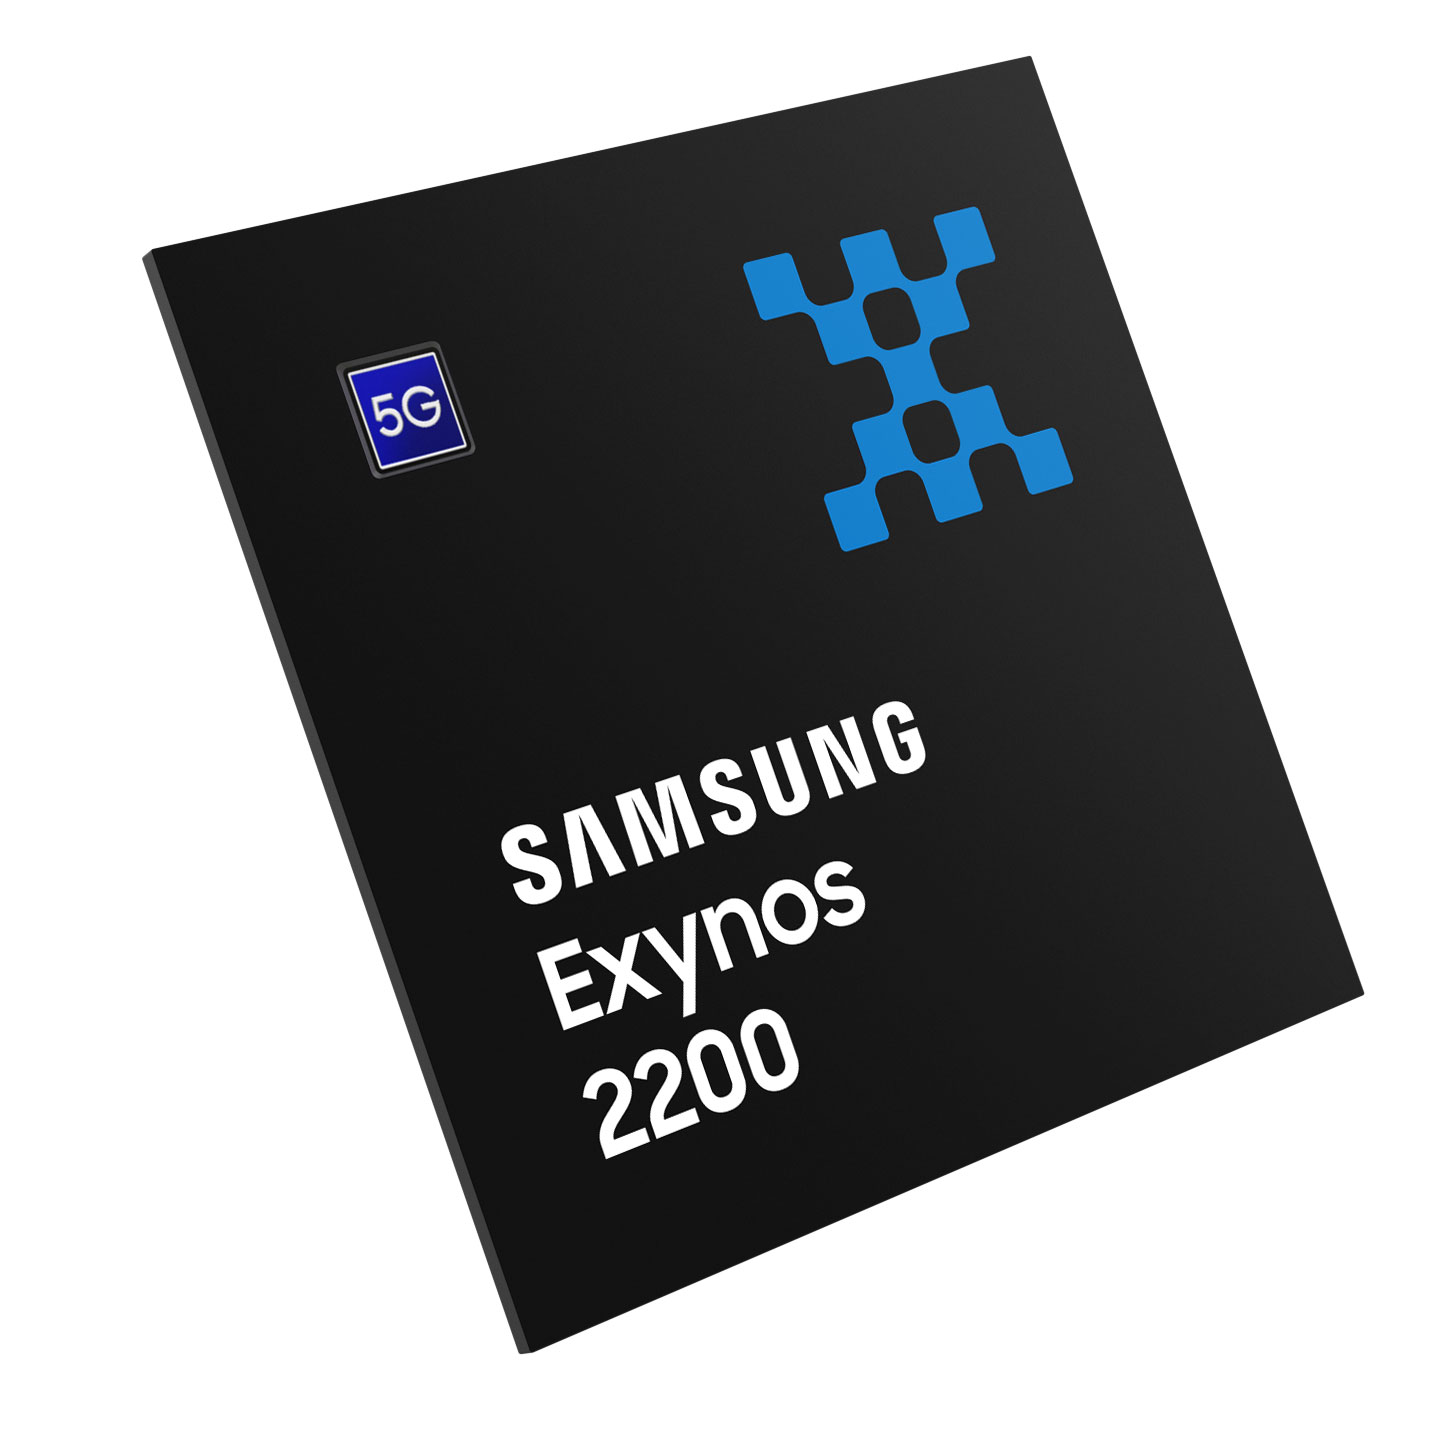 Immagine pubblicata in relazione al seguente contenuto: Samsung e AMD ancora insieme: in arrivo SoC Exynos con GPU RDNA 3 | Nome immagine: news34336_Samsung-Exynos_AMD-RDNA-3_1.jpg